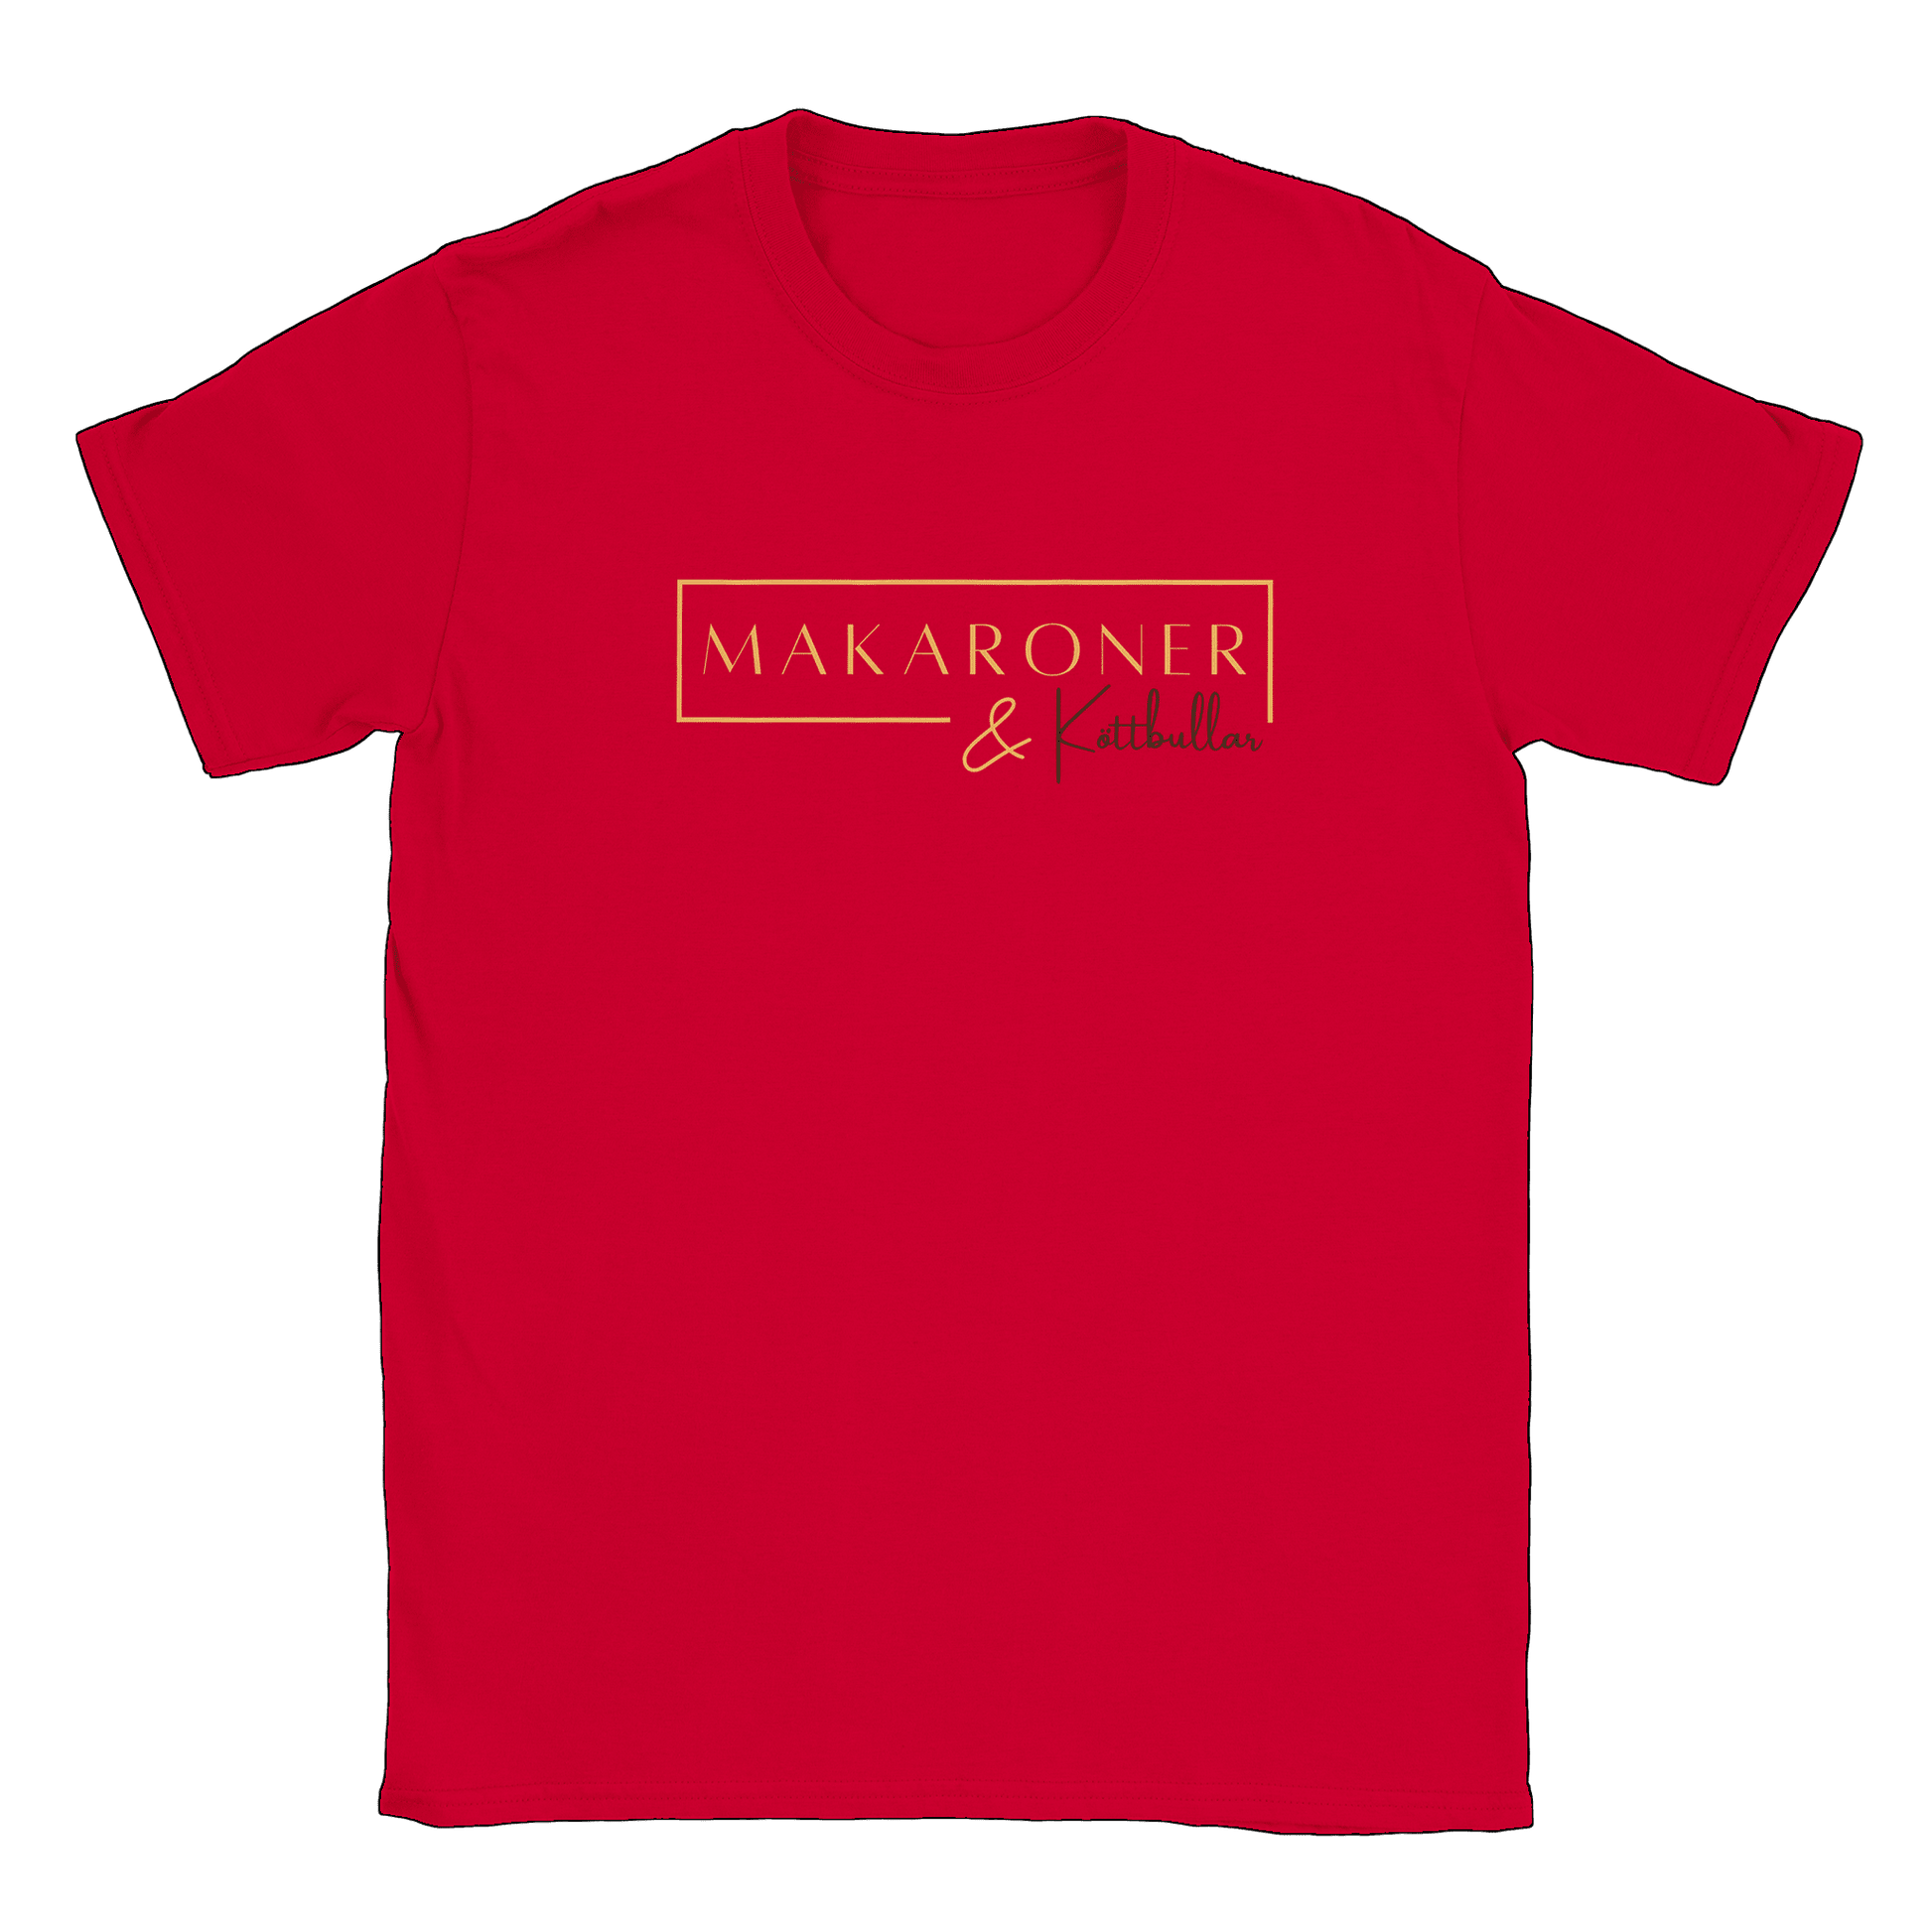 Makaroner och Köttbullar - T-shirt Röd